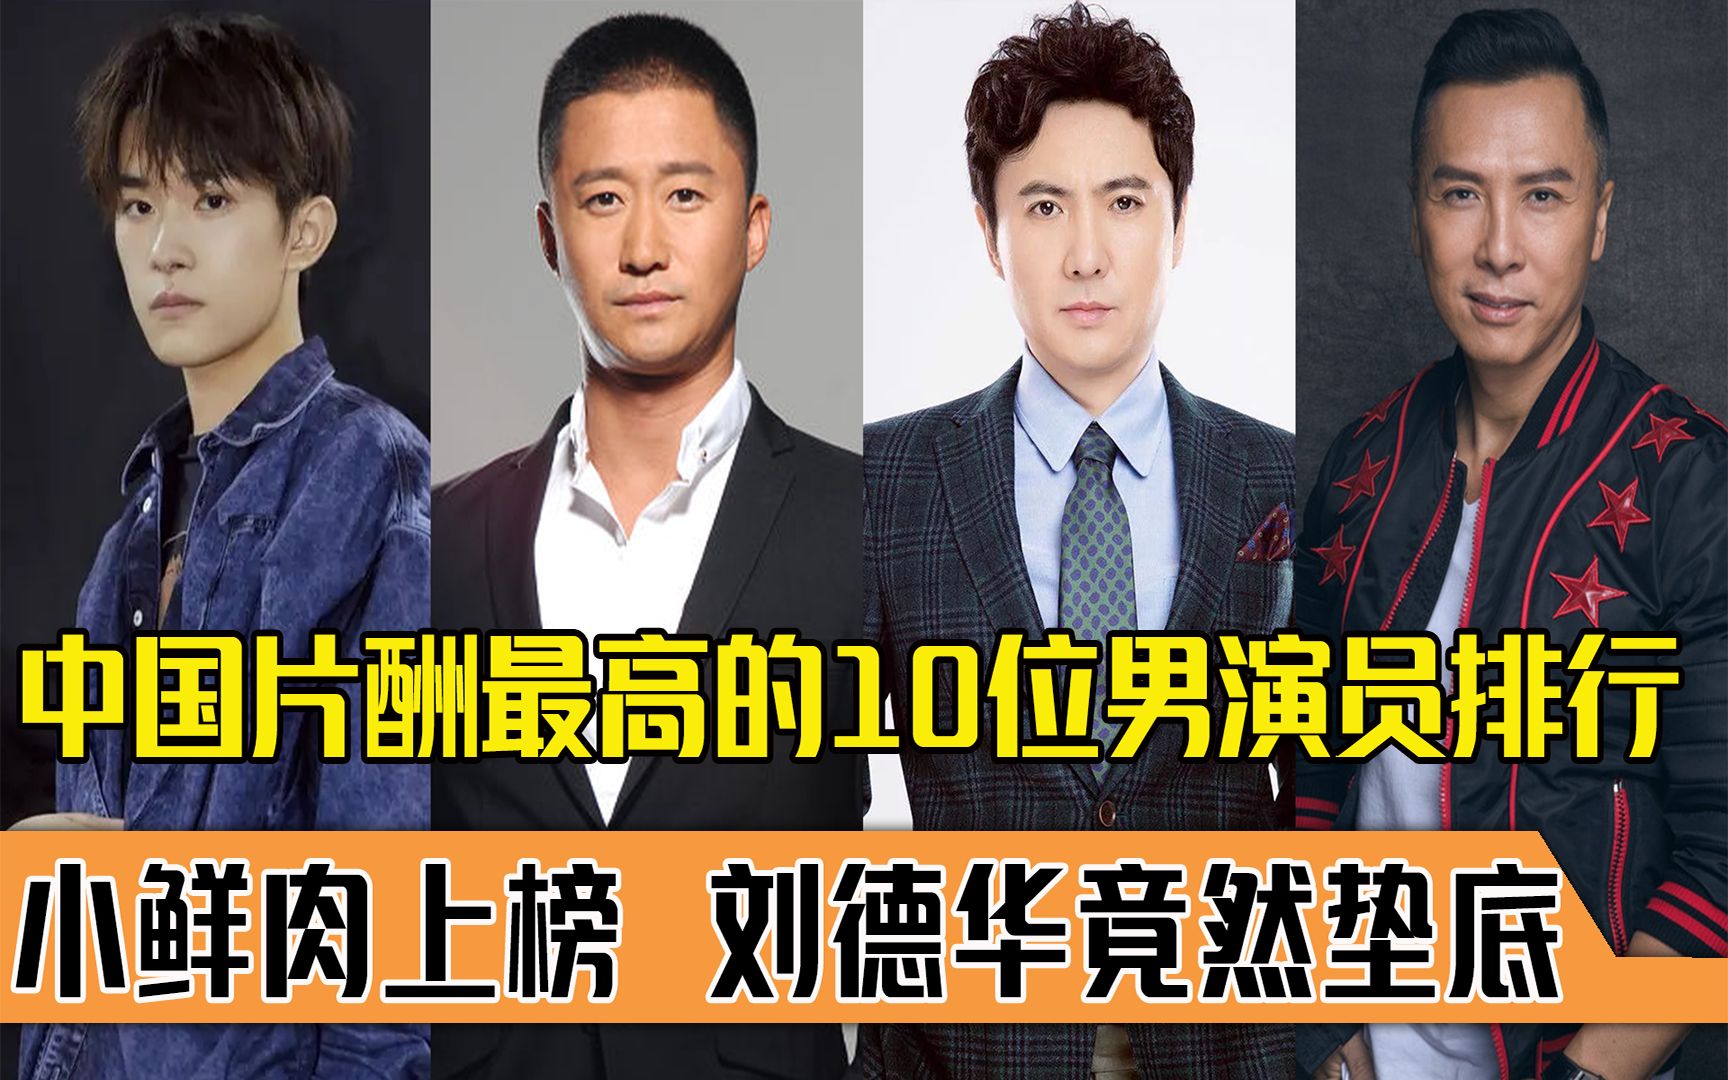 中国片酬最高10位男演员排行,小鲜肉上榜刘德华垫底?网友:凭啥